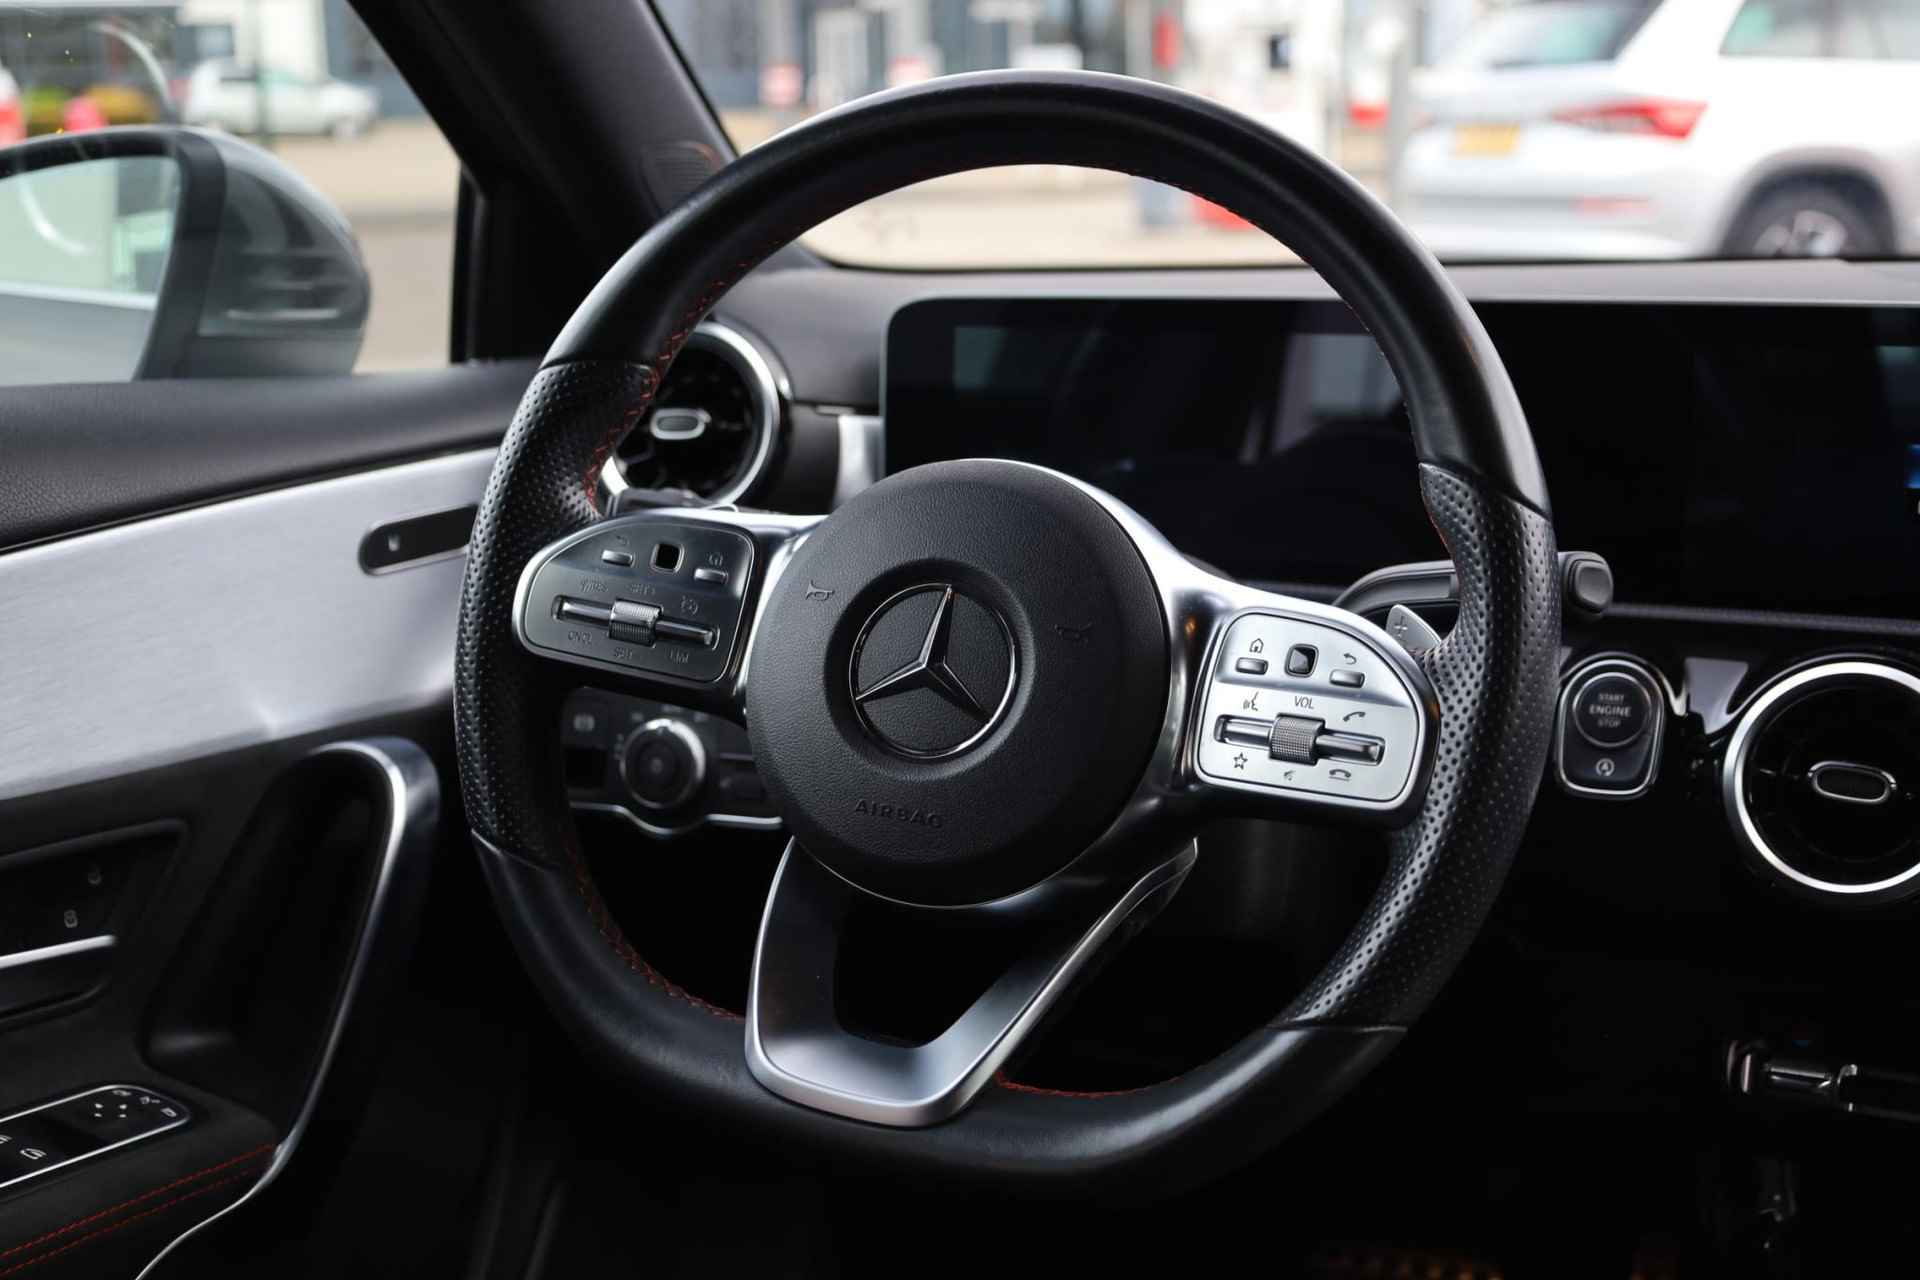 Mercedes-Benz A-klasse 200 Business Solution AMG 120KW/163PK automaat, Leder / alcantara, winterset LMV digitaal dashboard, navigatie, LED verlichting voor en achter, 18" LMV, stoelverwarming, parkeersensoren voor en achter, AMG bumpers - 21/44